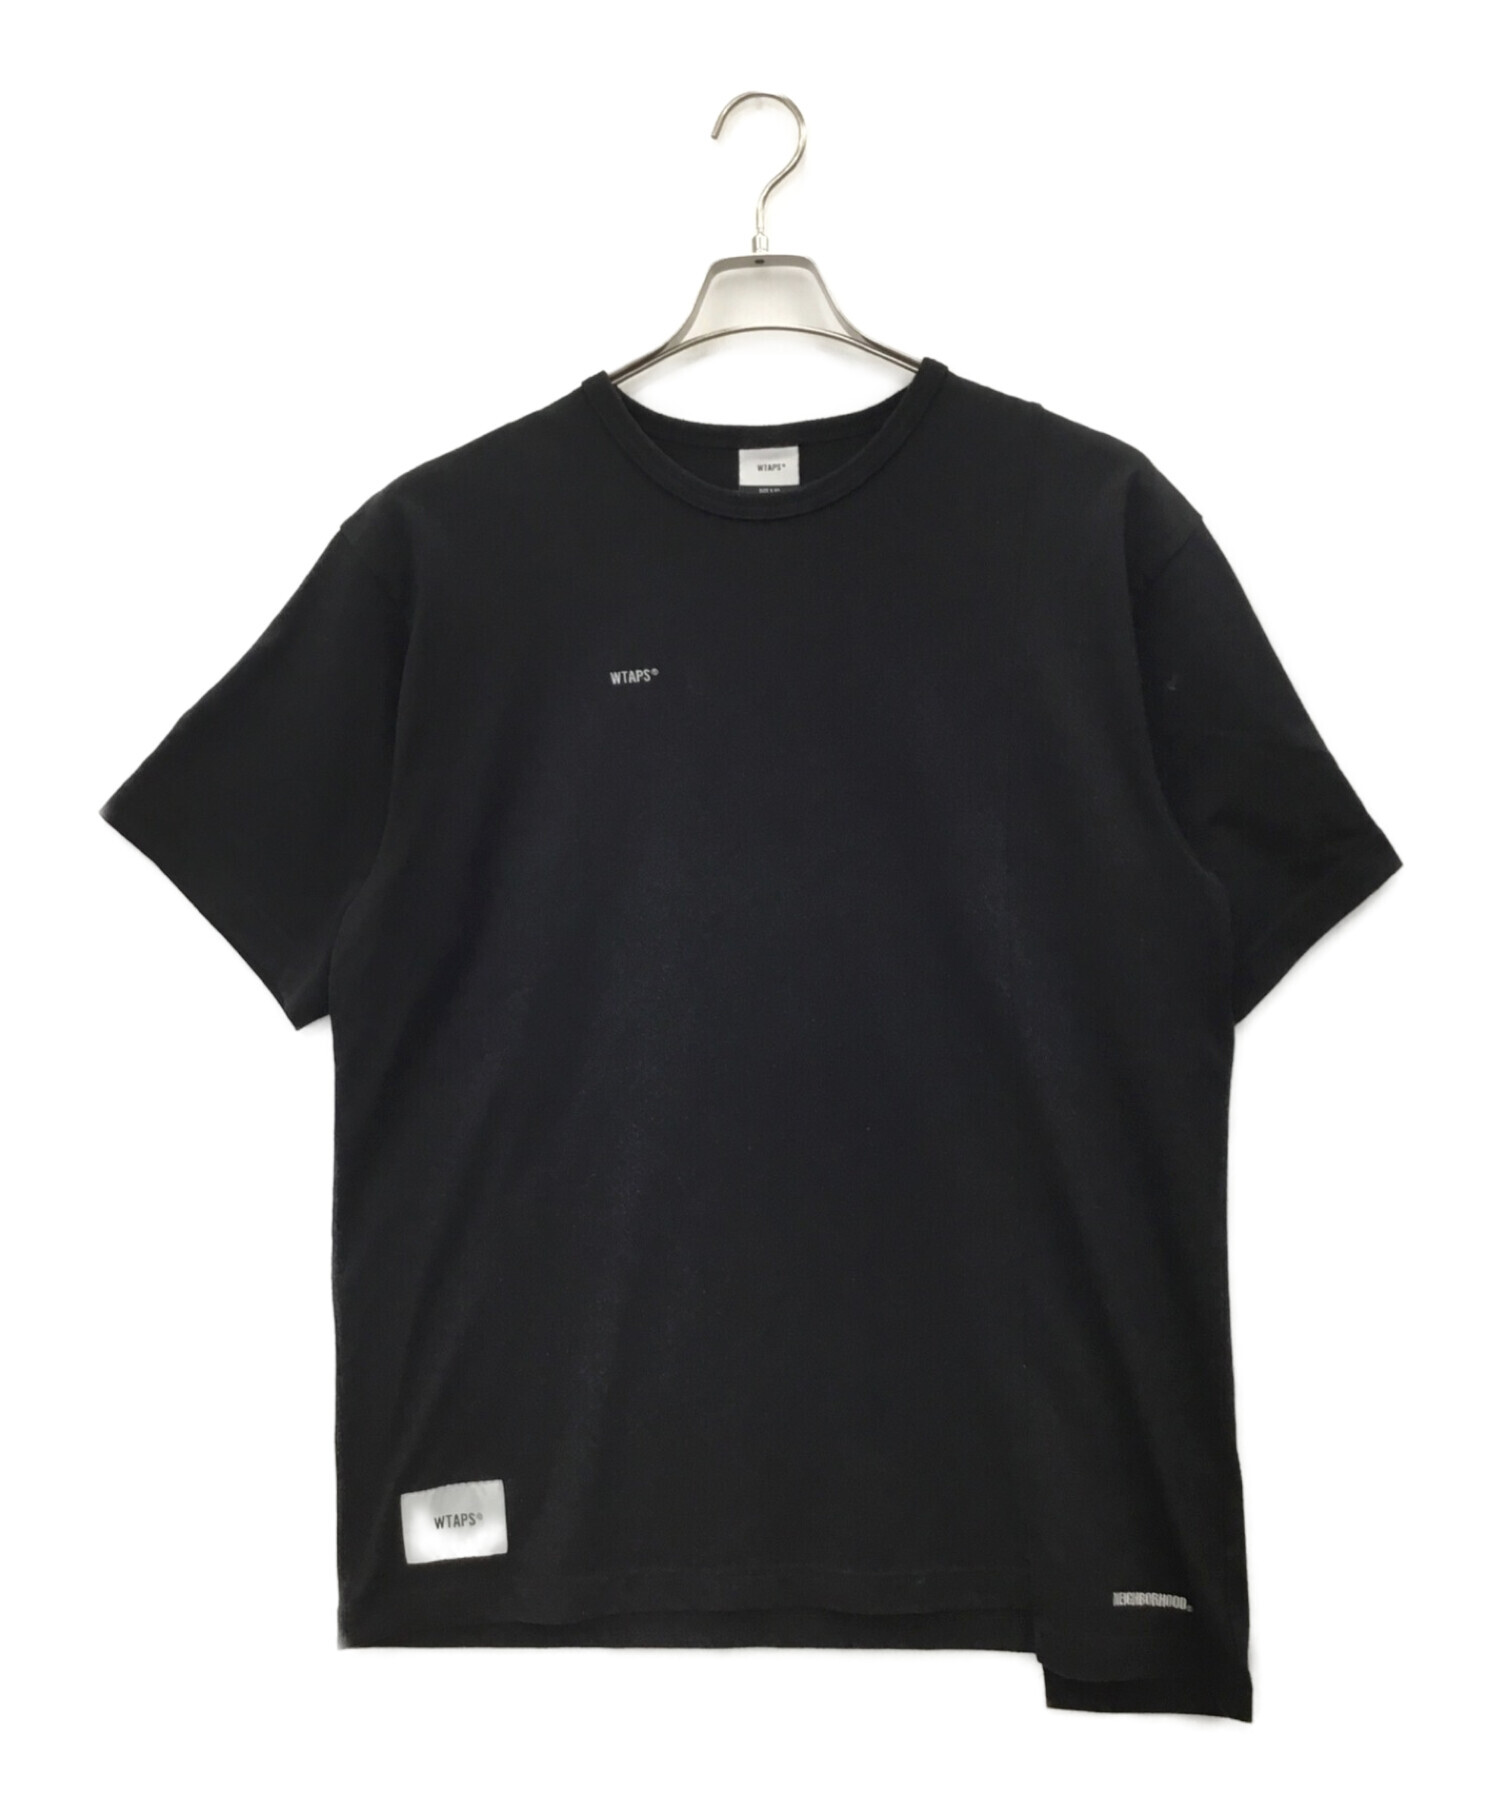 WTAPS×NEIGHBORHOOD Tシャツ ブラック | www.fleettracktz.com